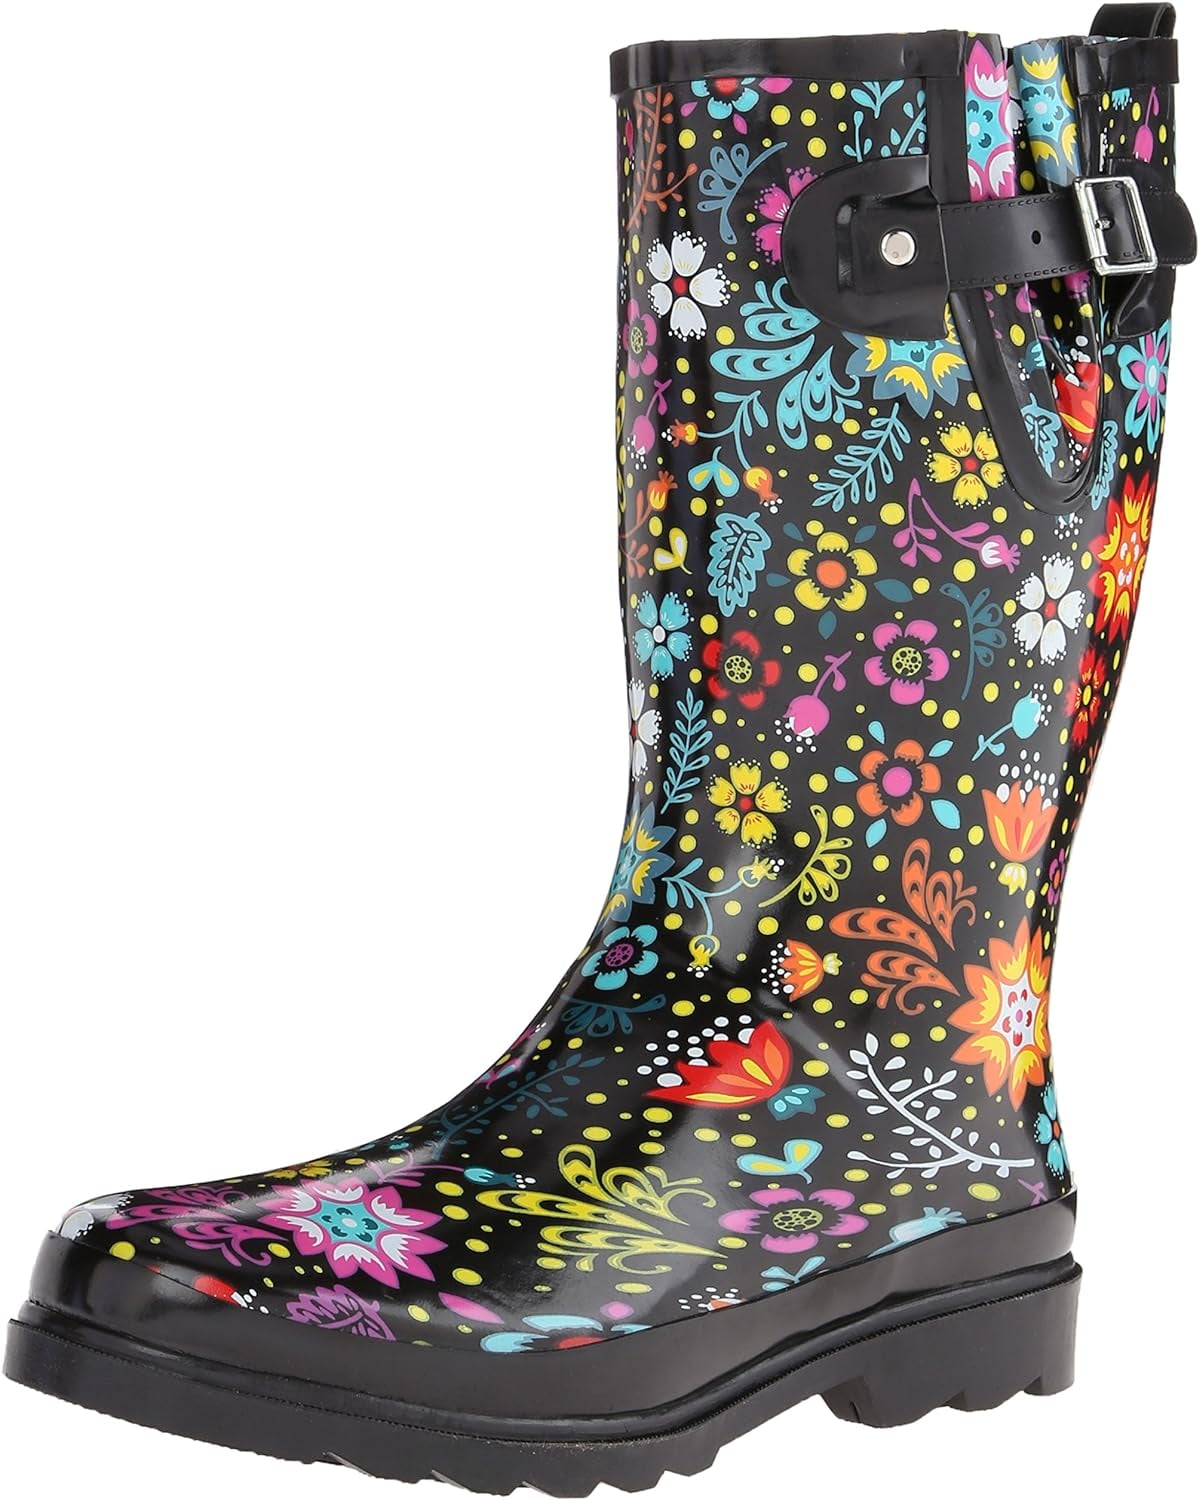 7 best rain boots for women